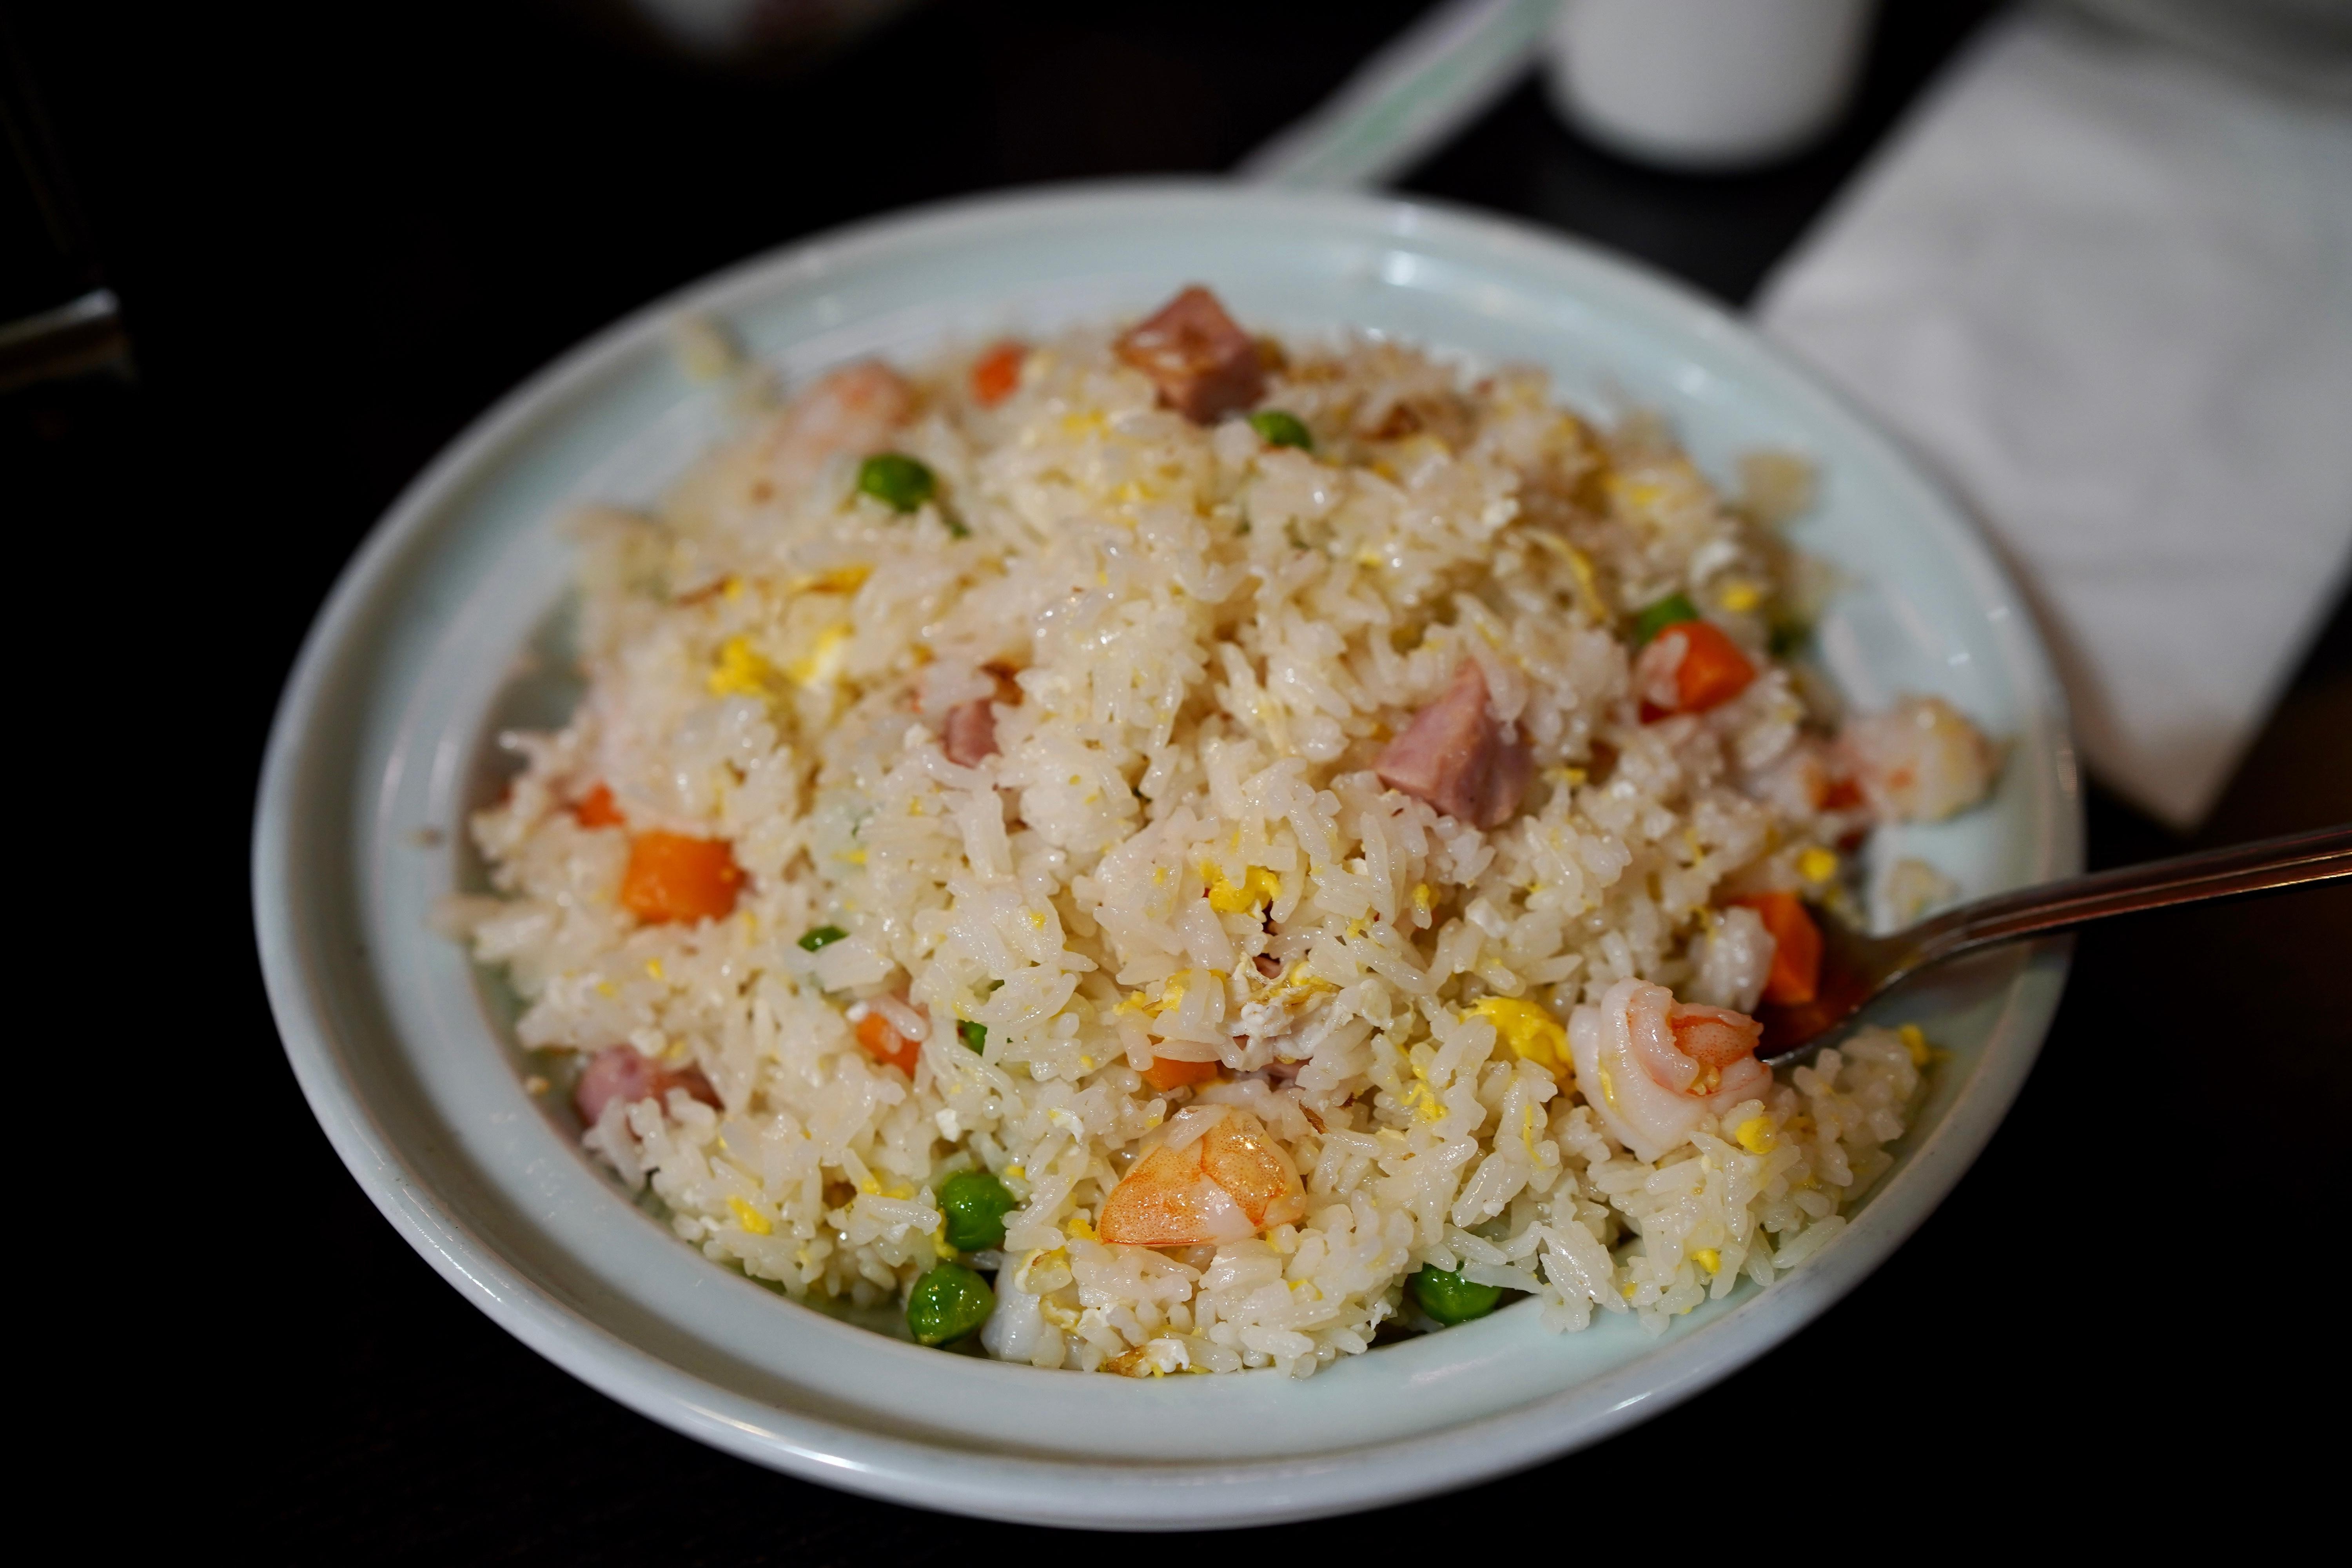 扬州炒饭 Yeung Chow Fried Rice